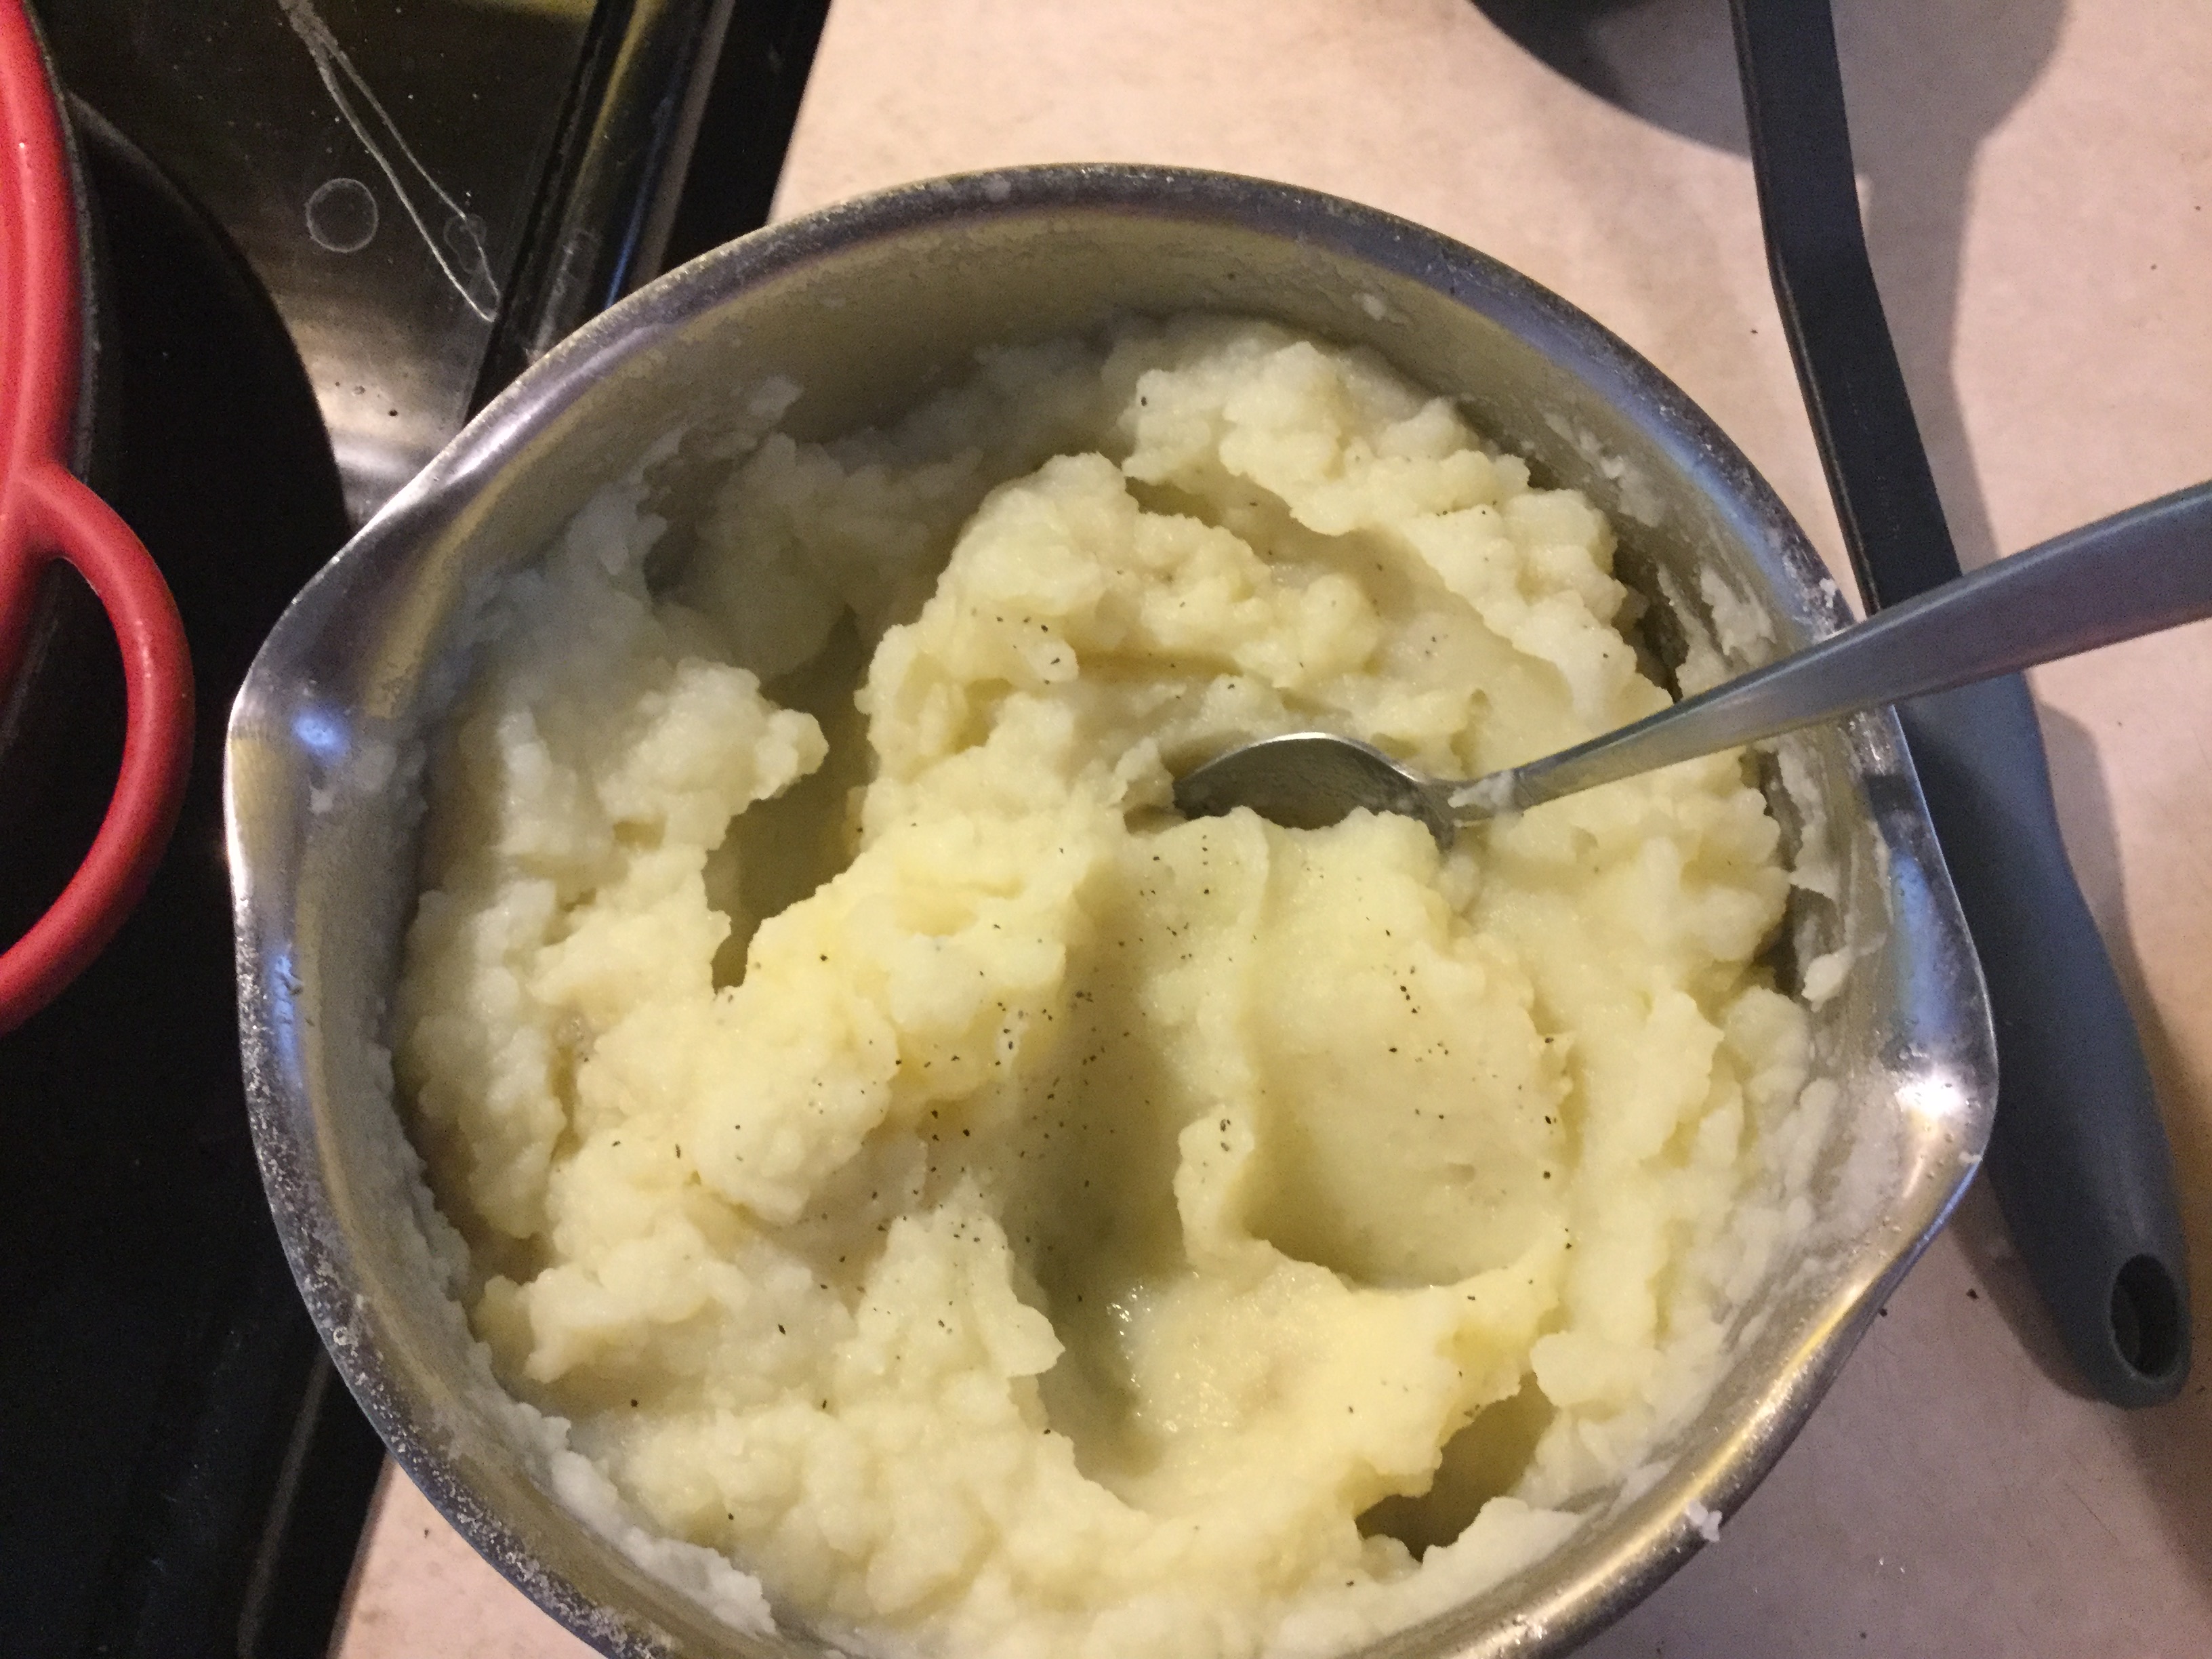 Basic Mashed Potatoes 